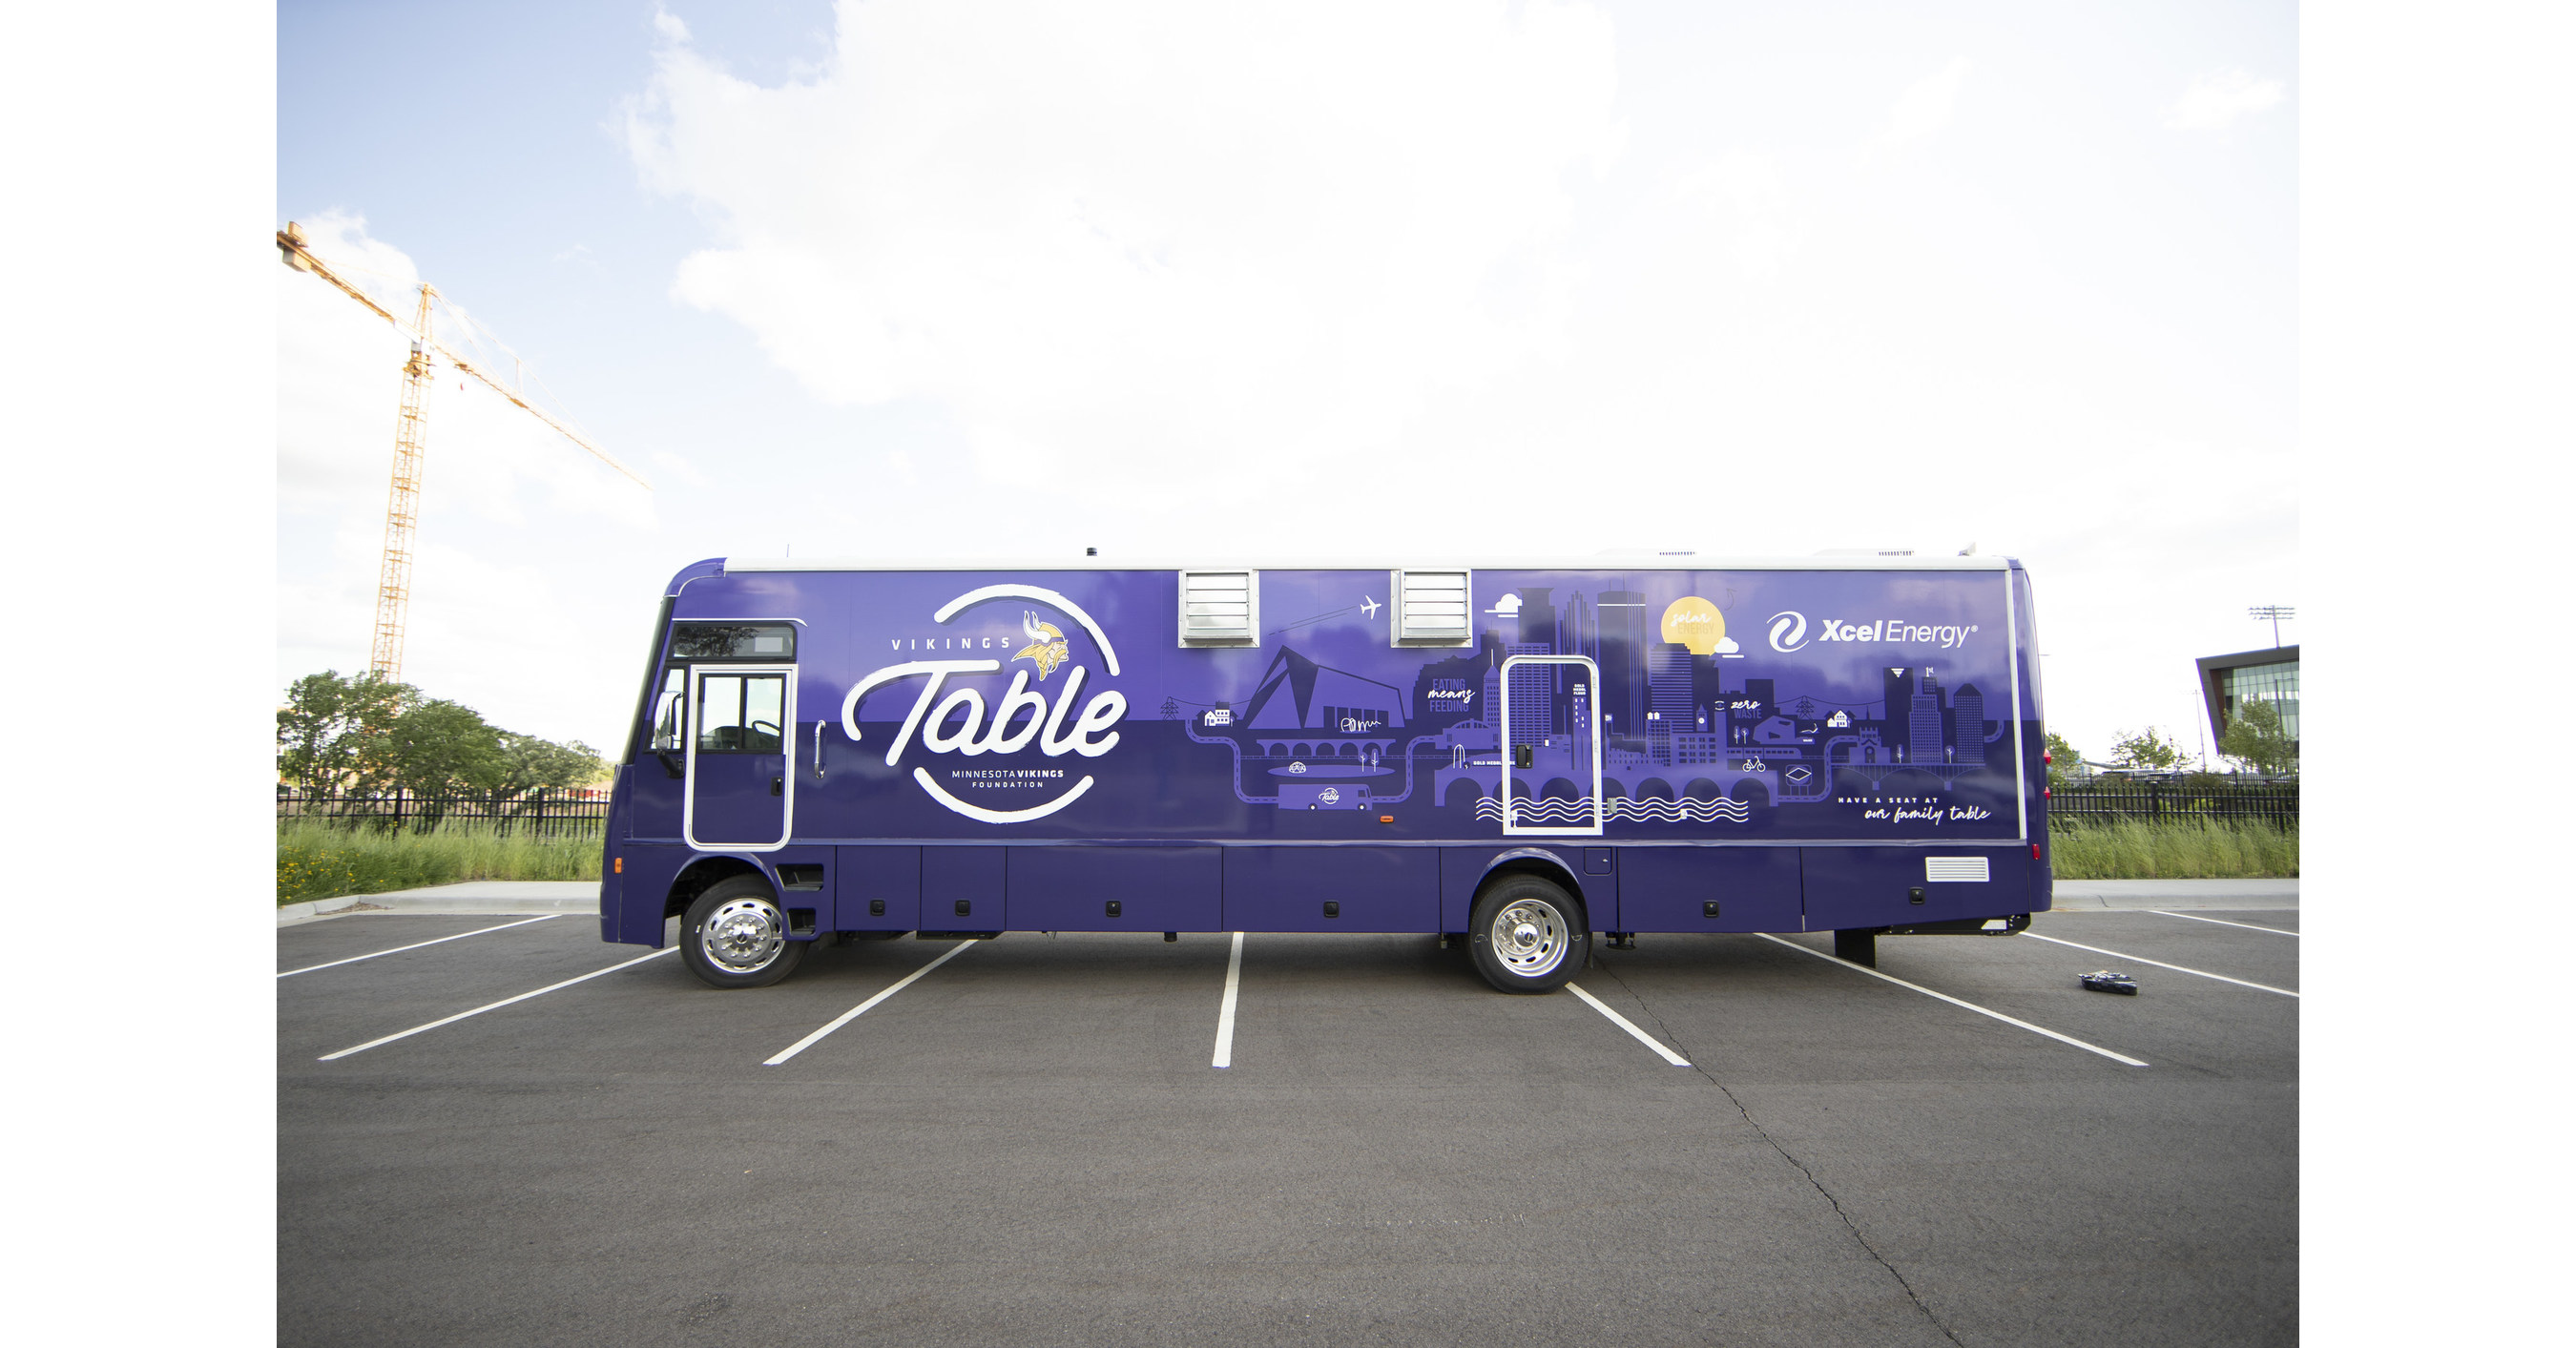 Minnesota Vikings Foundation 'Vikings Table' Food Truck Built by Winnebago  Industries